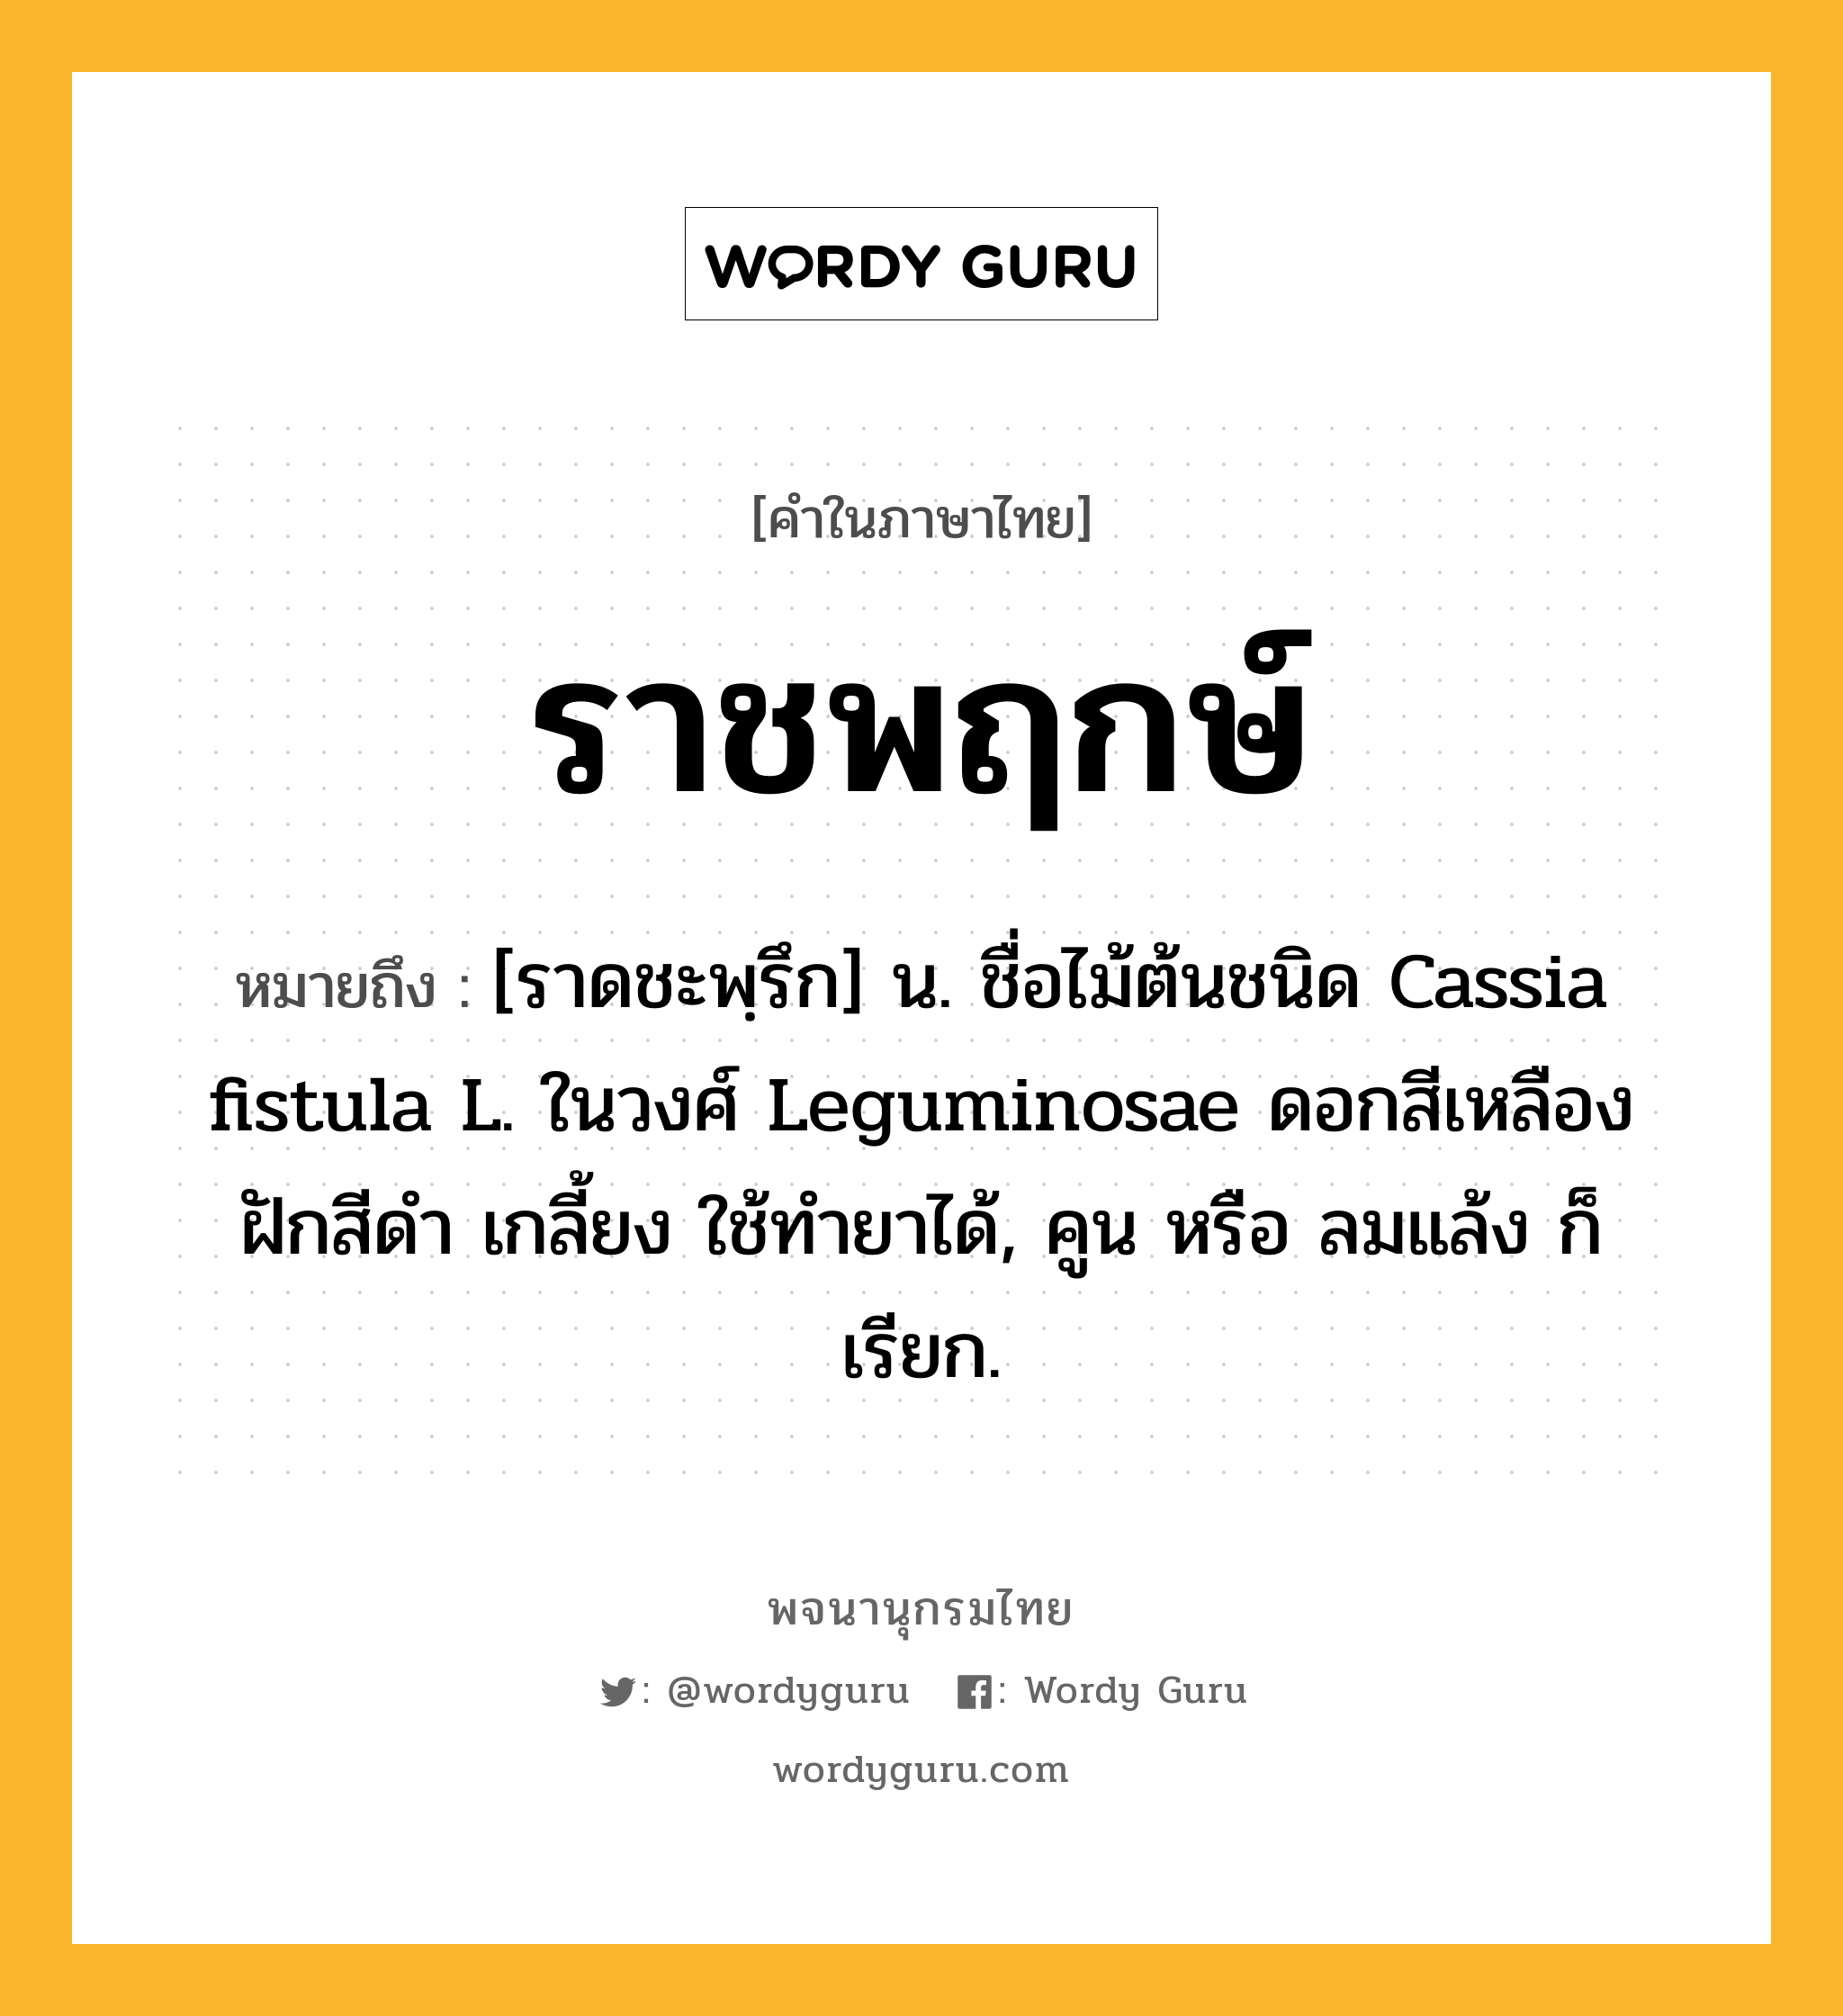 ราชพฤกษ์ ความหมาย หมายถึงอะไร?, คำในภาษาไทย ราชพฤกษ์ หมายถึง [ราดชะพฺรึก] น. ชื่อไม้ต้นชนิด Cassia fistula L. ในวงศ์ Leguminosae ดอกสีเหลือง ฝักสีดํา เกลี้ยง ใช้ทํายาได้, คูน หรือ ลมแล้ง ก็เรียก.